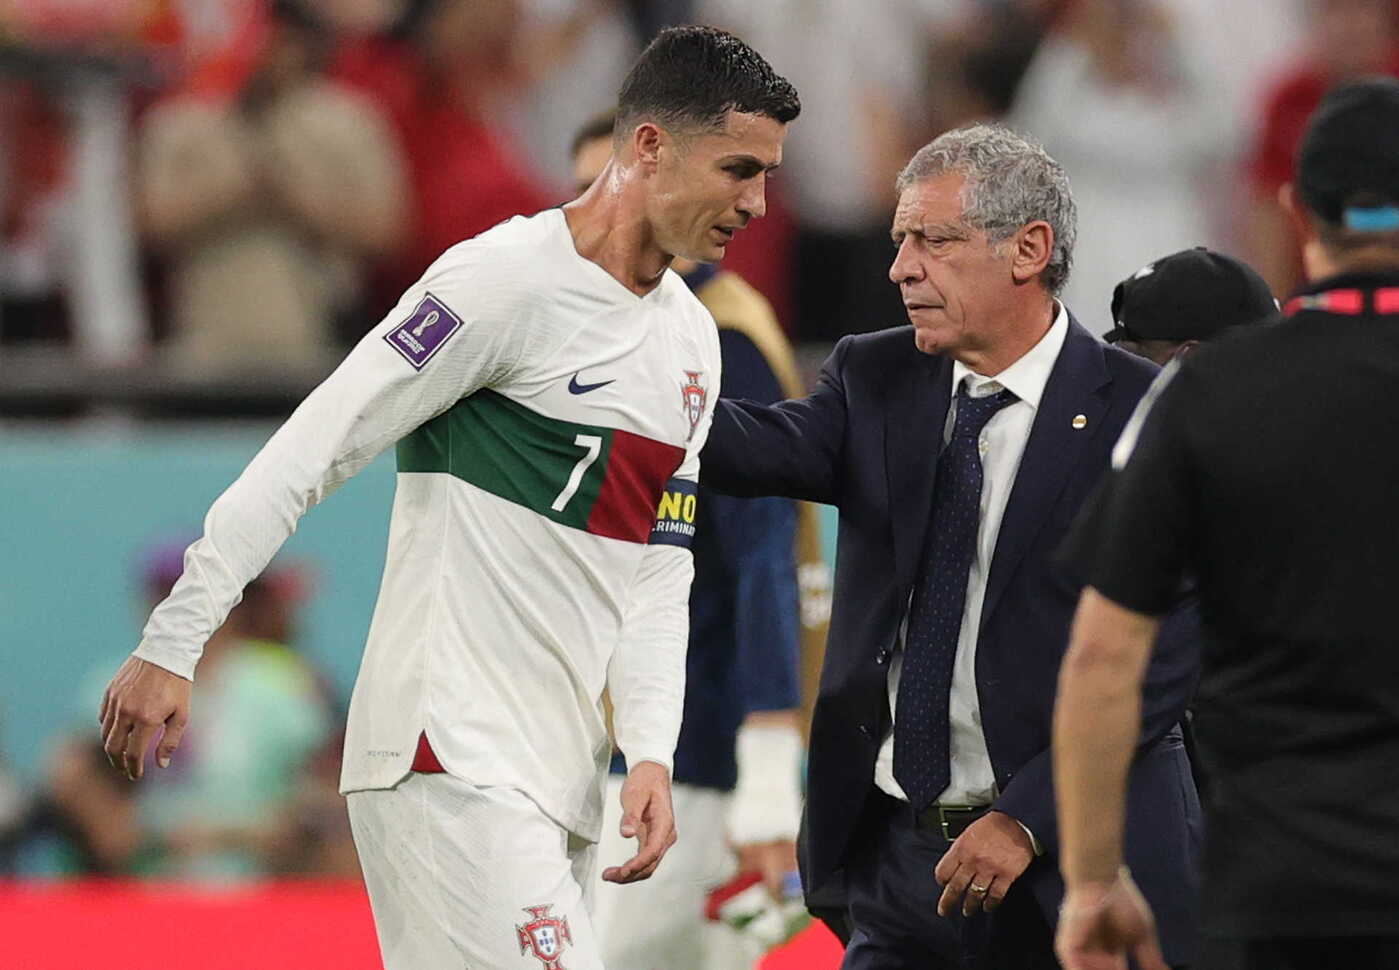 Ronaldo của Bồ Đào Nha chưa bao giờ dễ dàng để bị loại khỏi giải đấu. Nhưng những nước mắt của anh trong trận đấu đã thể hiện rõ sự đam mê và tinh thần bất khuất của anh. Hãy cùng xem hình của anh và tìm hiểu về câu chuyện đầy cảm xúc này.